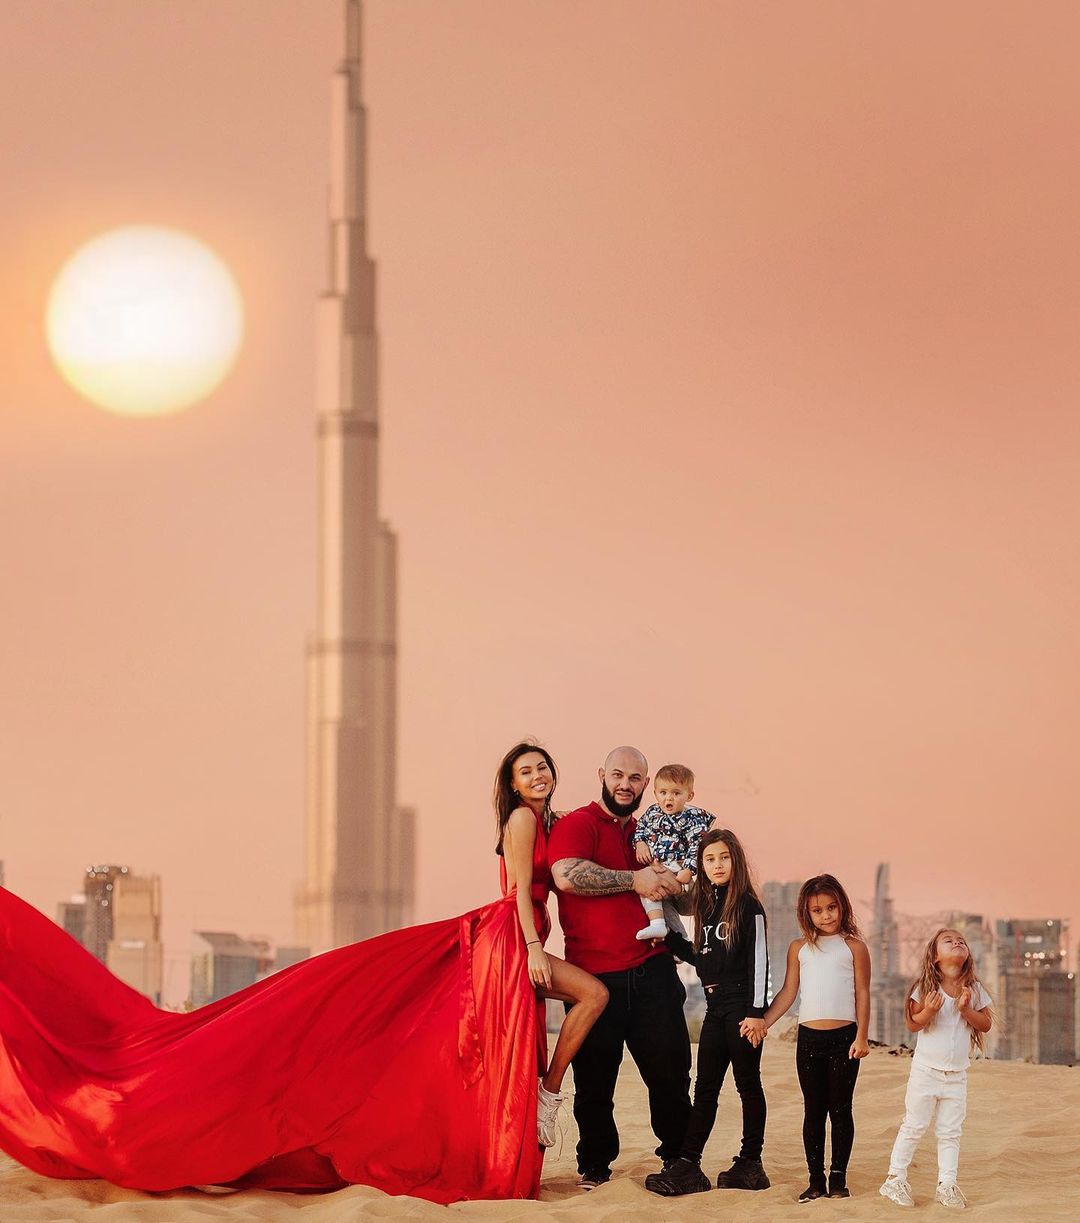 "Оторвали жопки от лежака": Оксана Самойлова показала кадры семейной фотосессии в Дубае